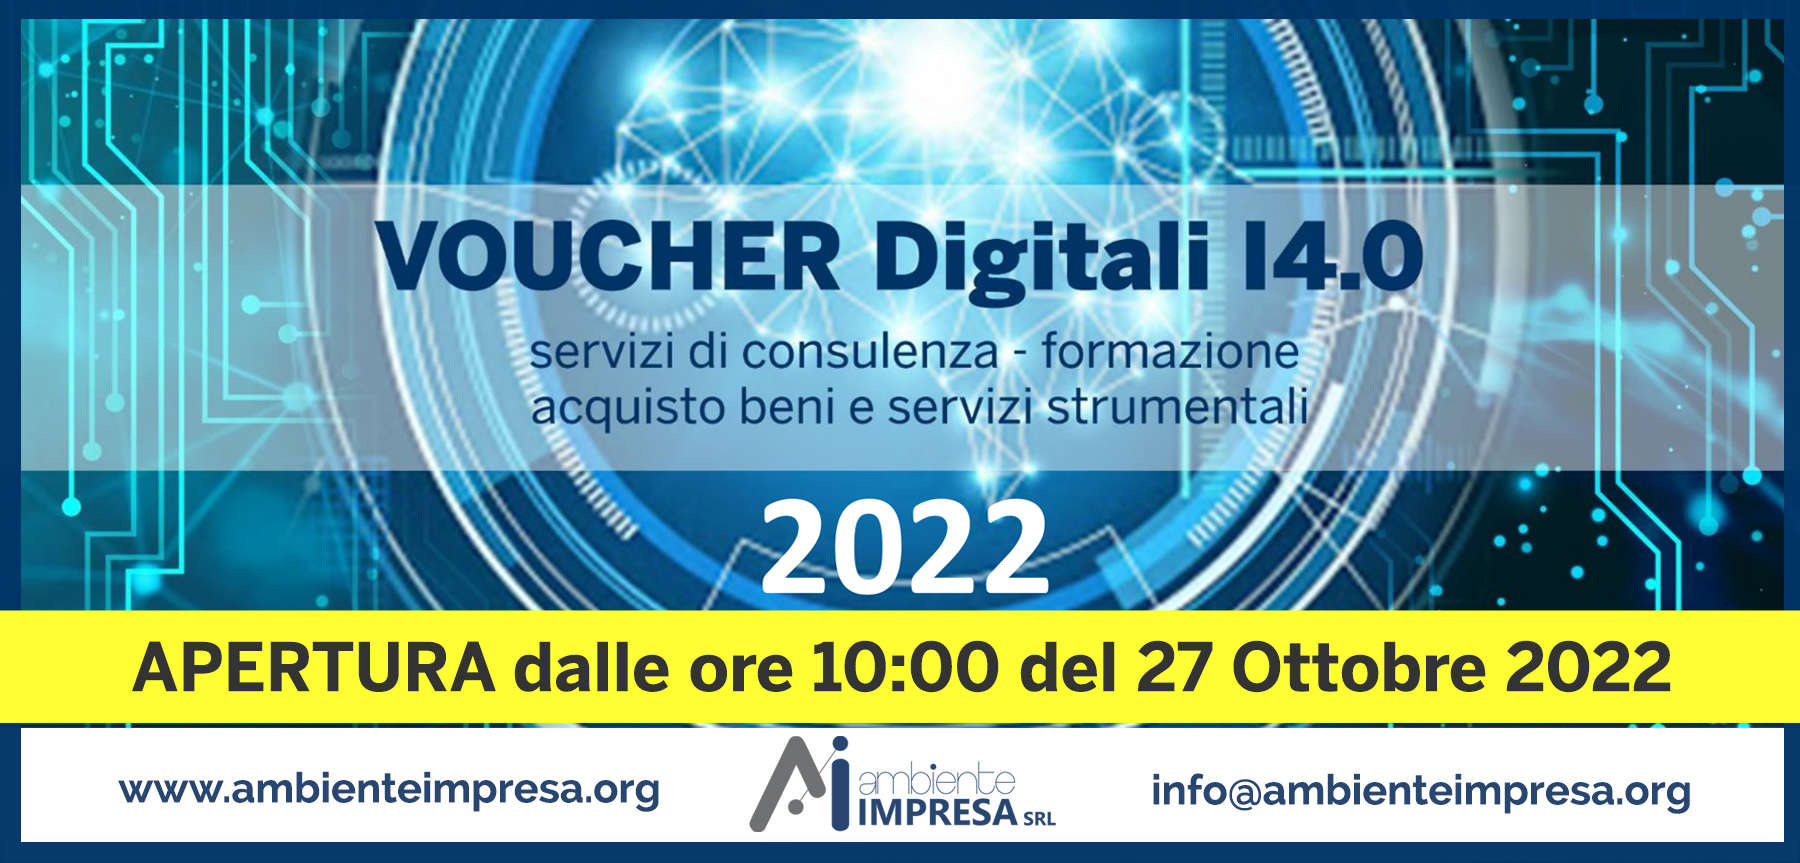 VOUCHER DIGITALI I4.0 2022  Camera di Commercio  CAGLIARI-ORISTANO - Ambiente Impresa srl - Cagliari